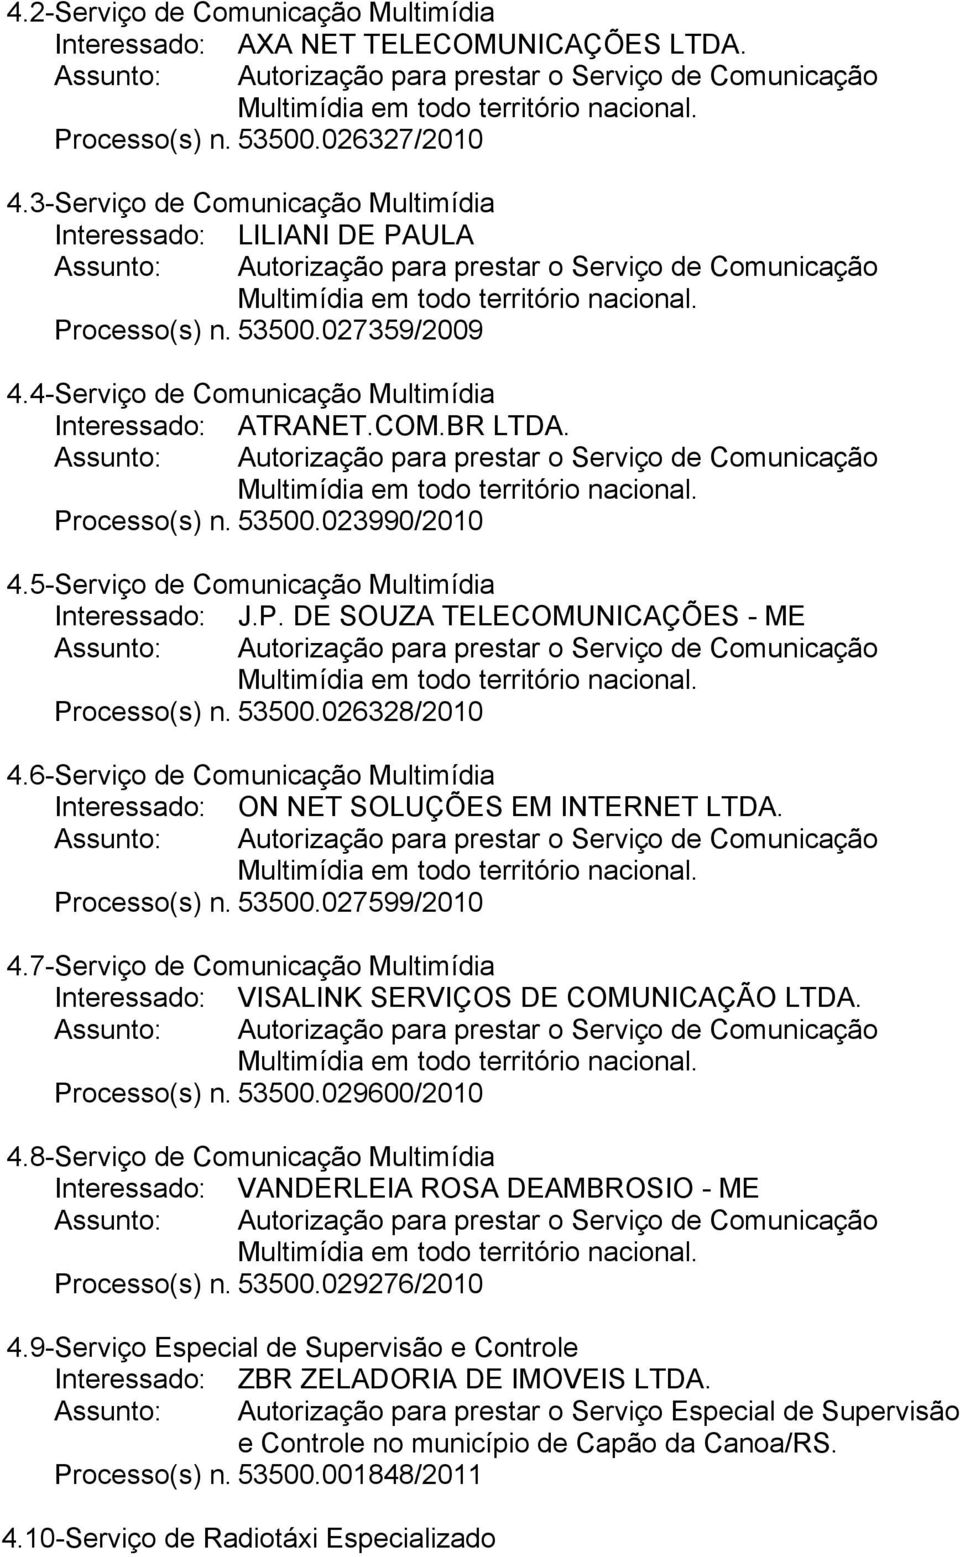 53500.026328/2010 4.6- Serviço de Comunicação Multimídia Interessado: ON NET SOLUÇÕES EM INTERNET LTDA. Processo(s) n. 53500.027599/2010 4.